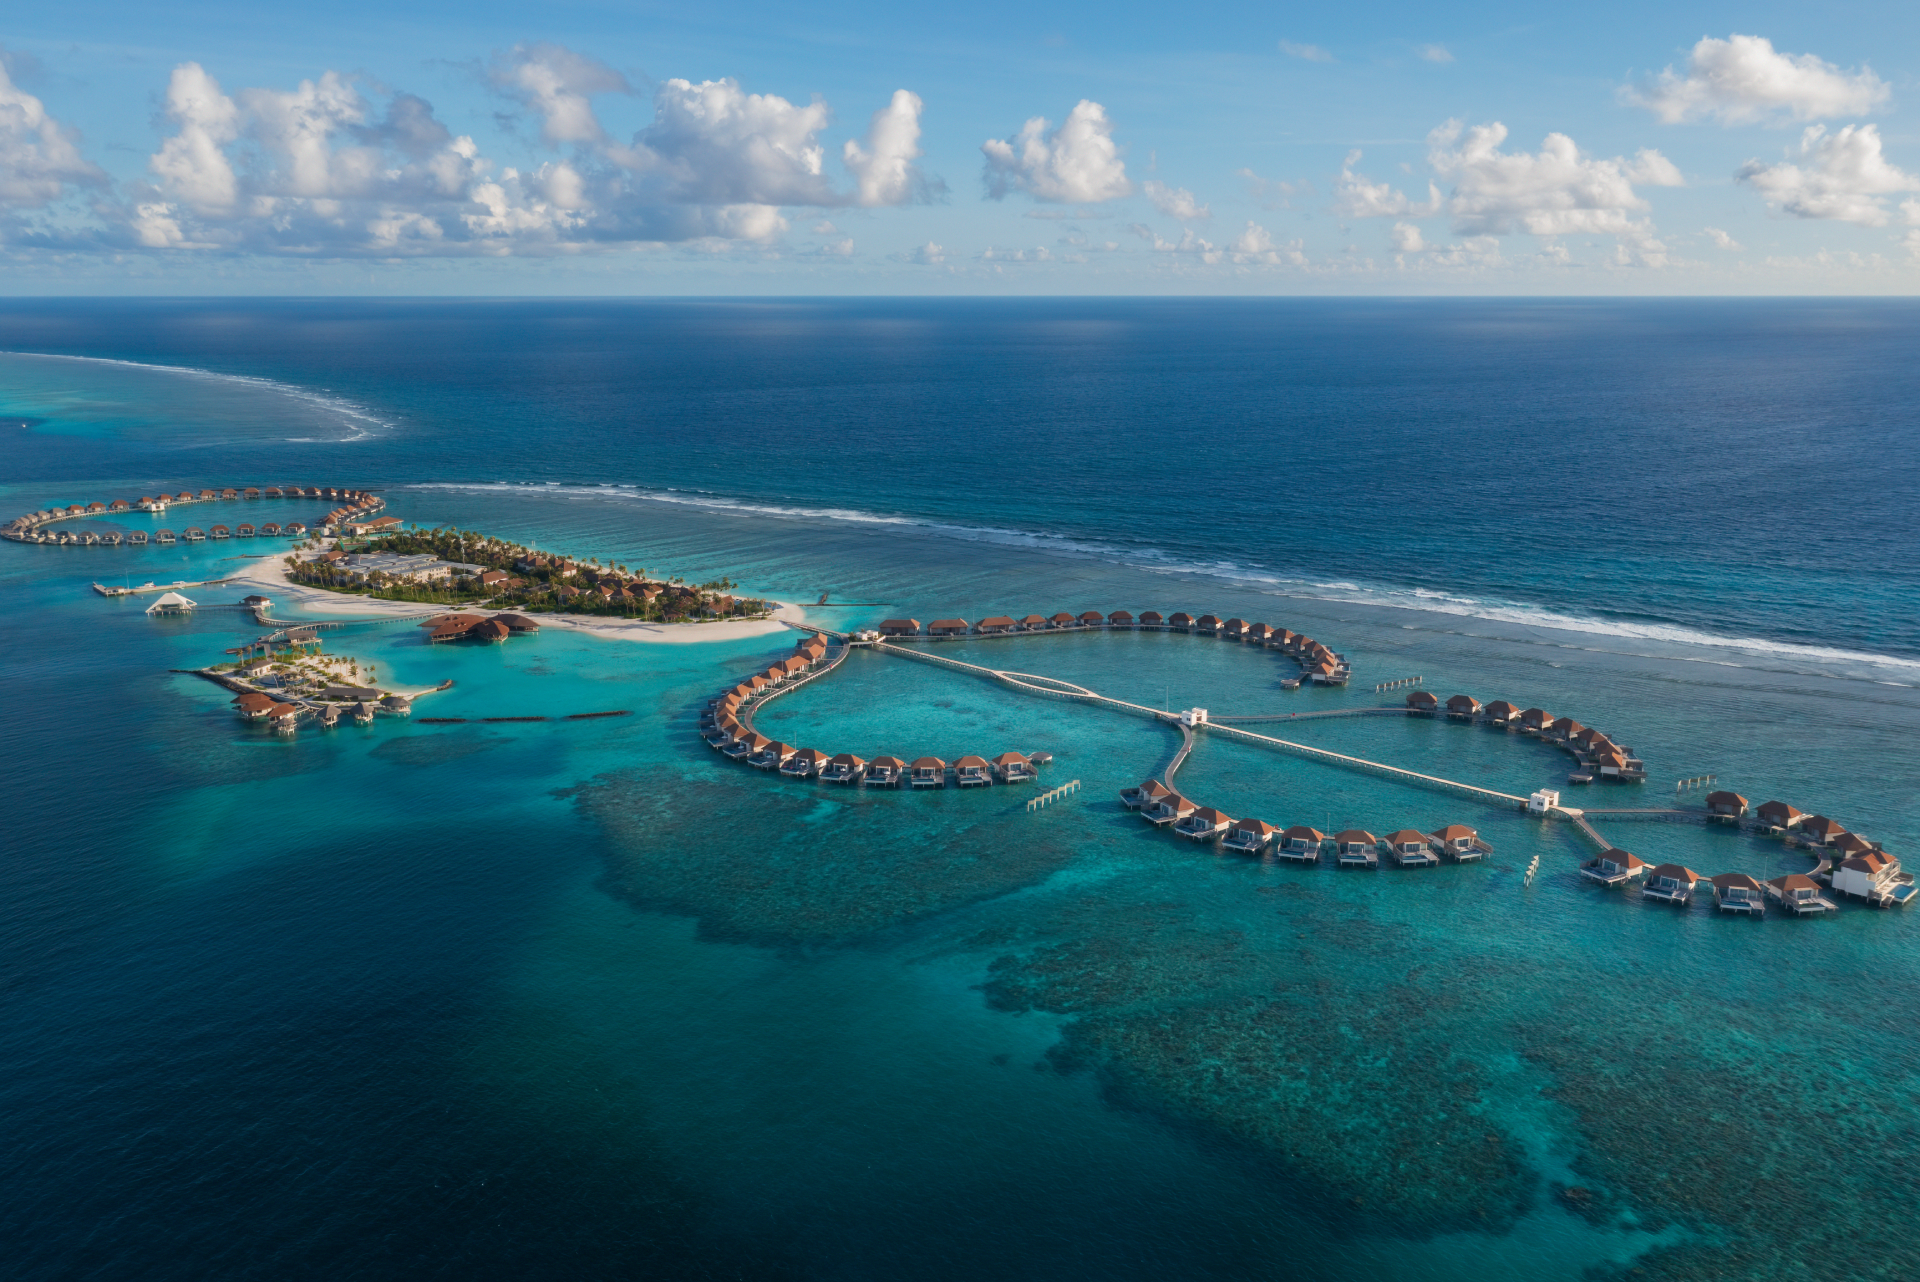 Radisson Blu Resort Maldives - Best Luxury Hotel in Maldives